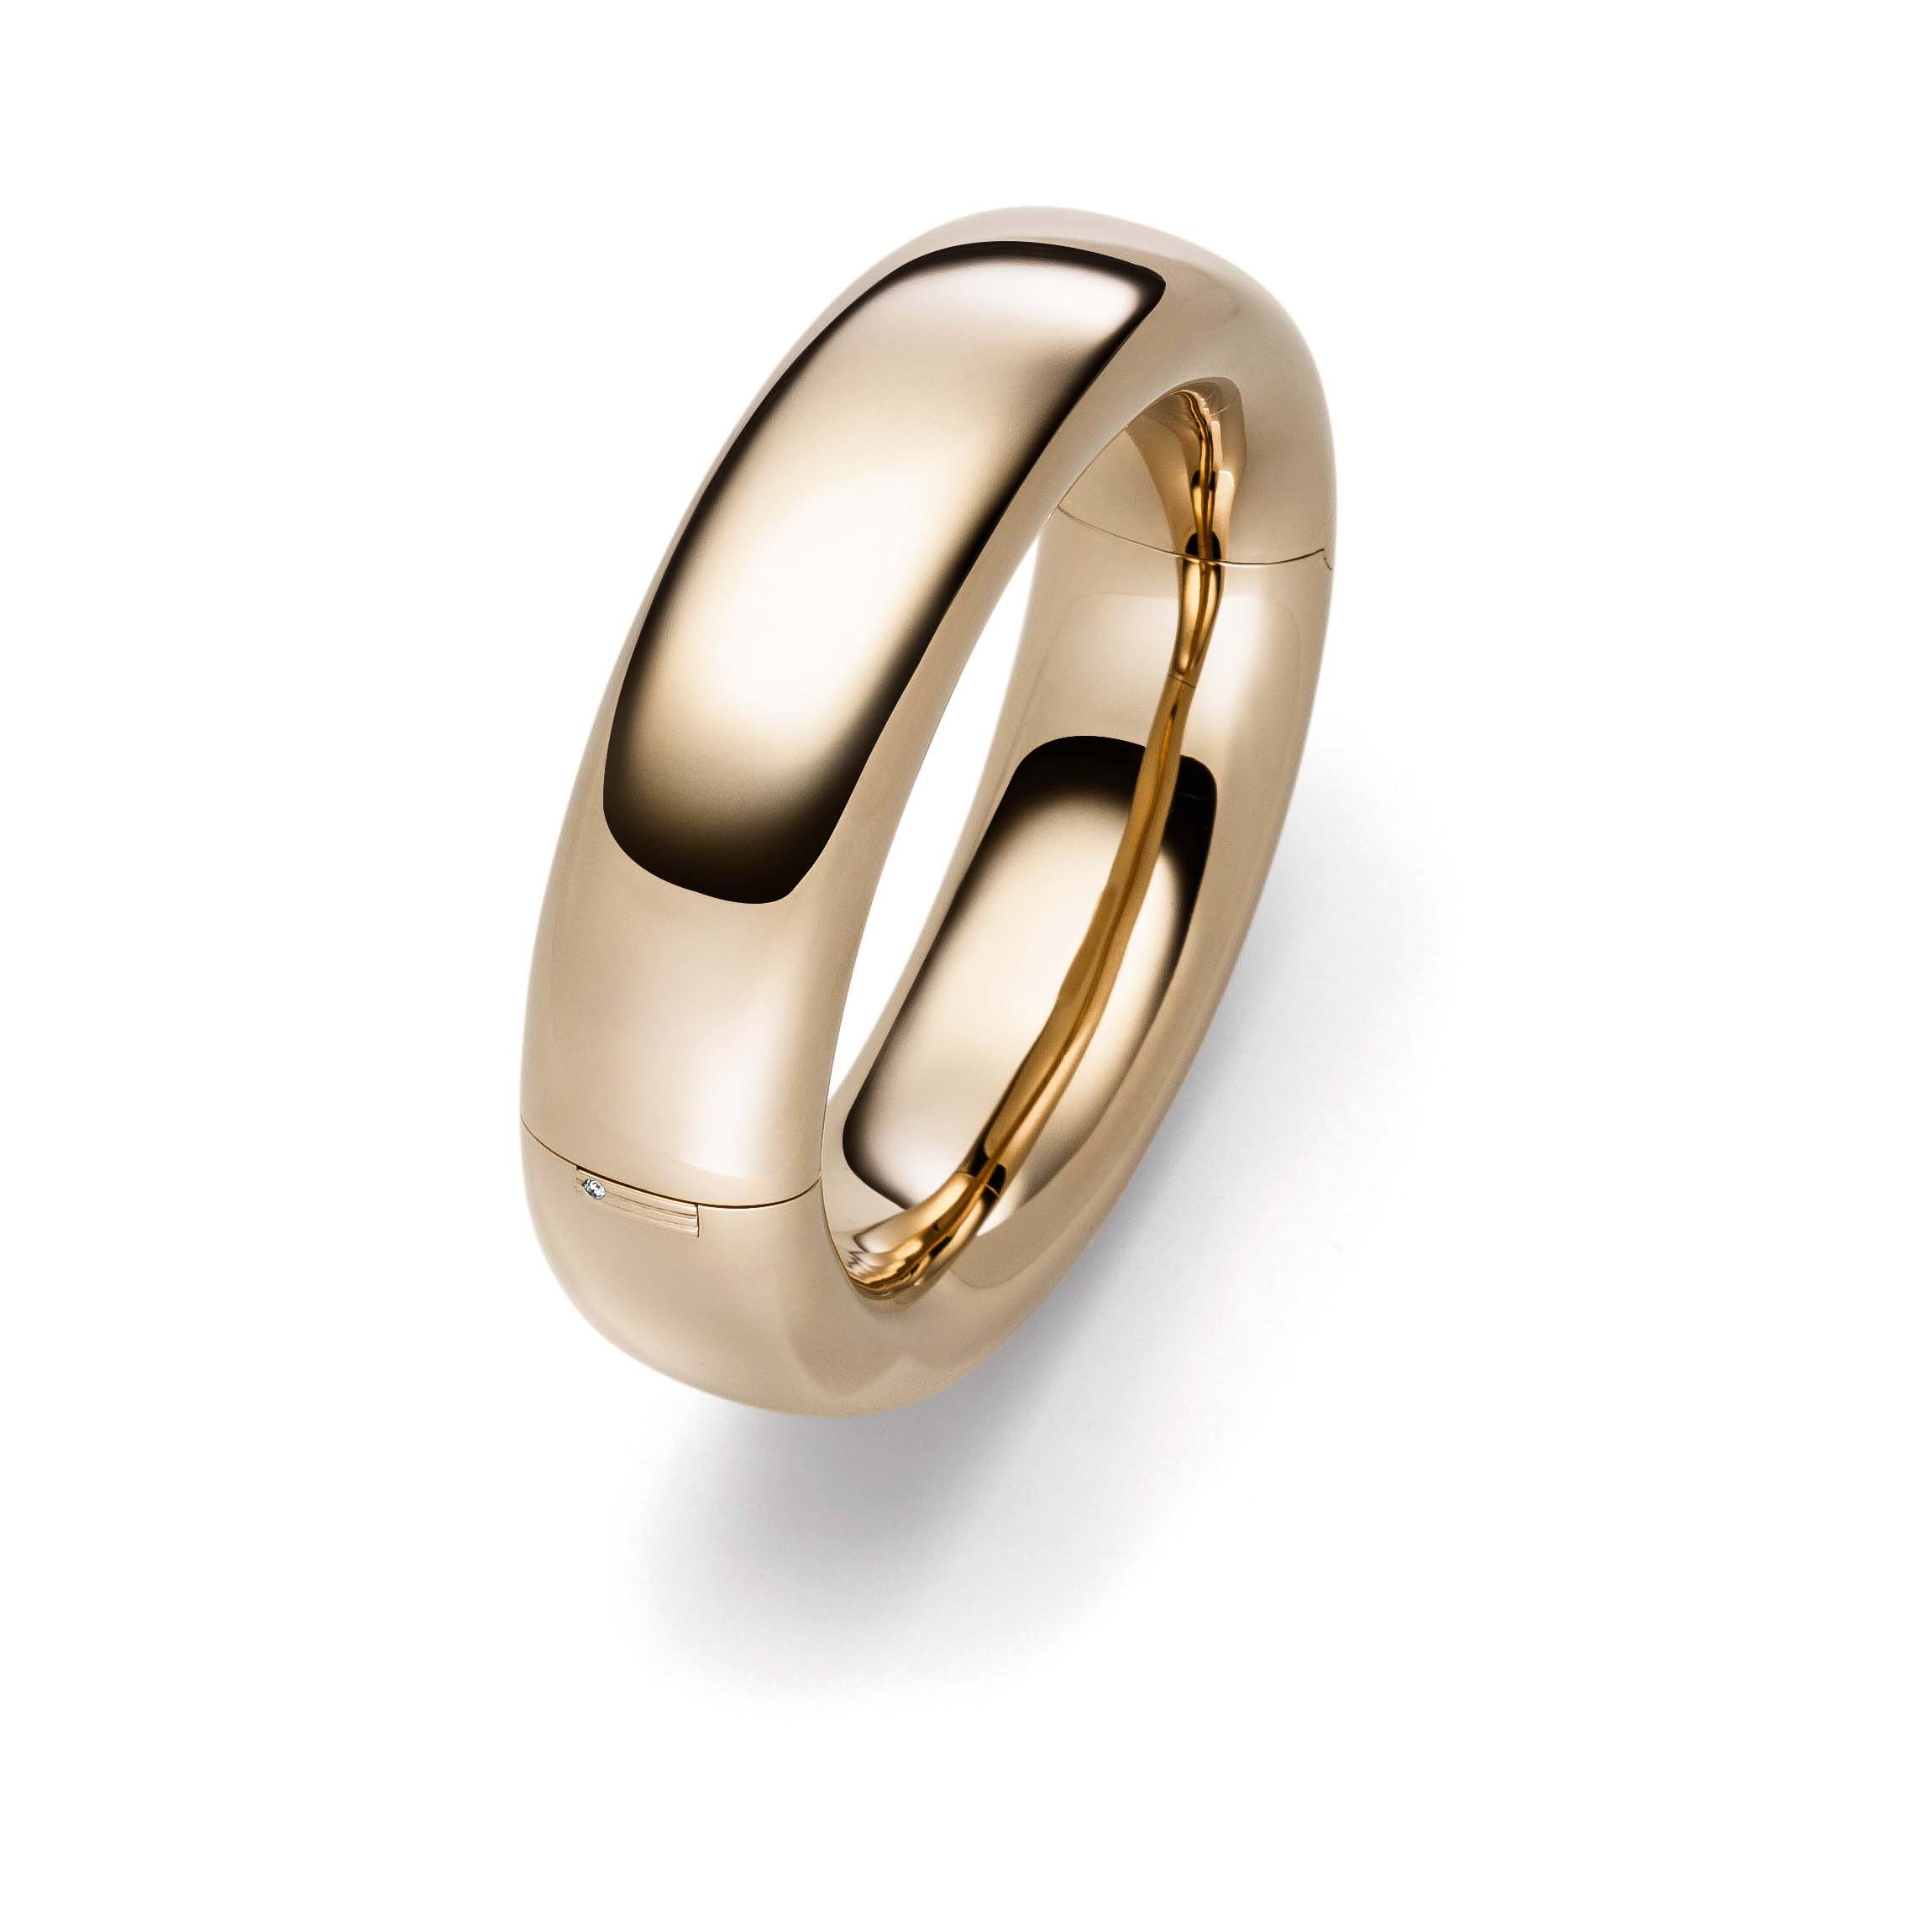 مصنع خاتم مطلي بالذهب الأصفر عيار 18 قيراط يضيف شعارك إلى هذا النوع من الخواتم